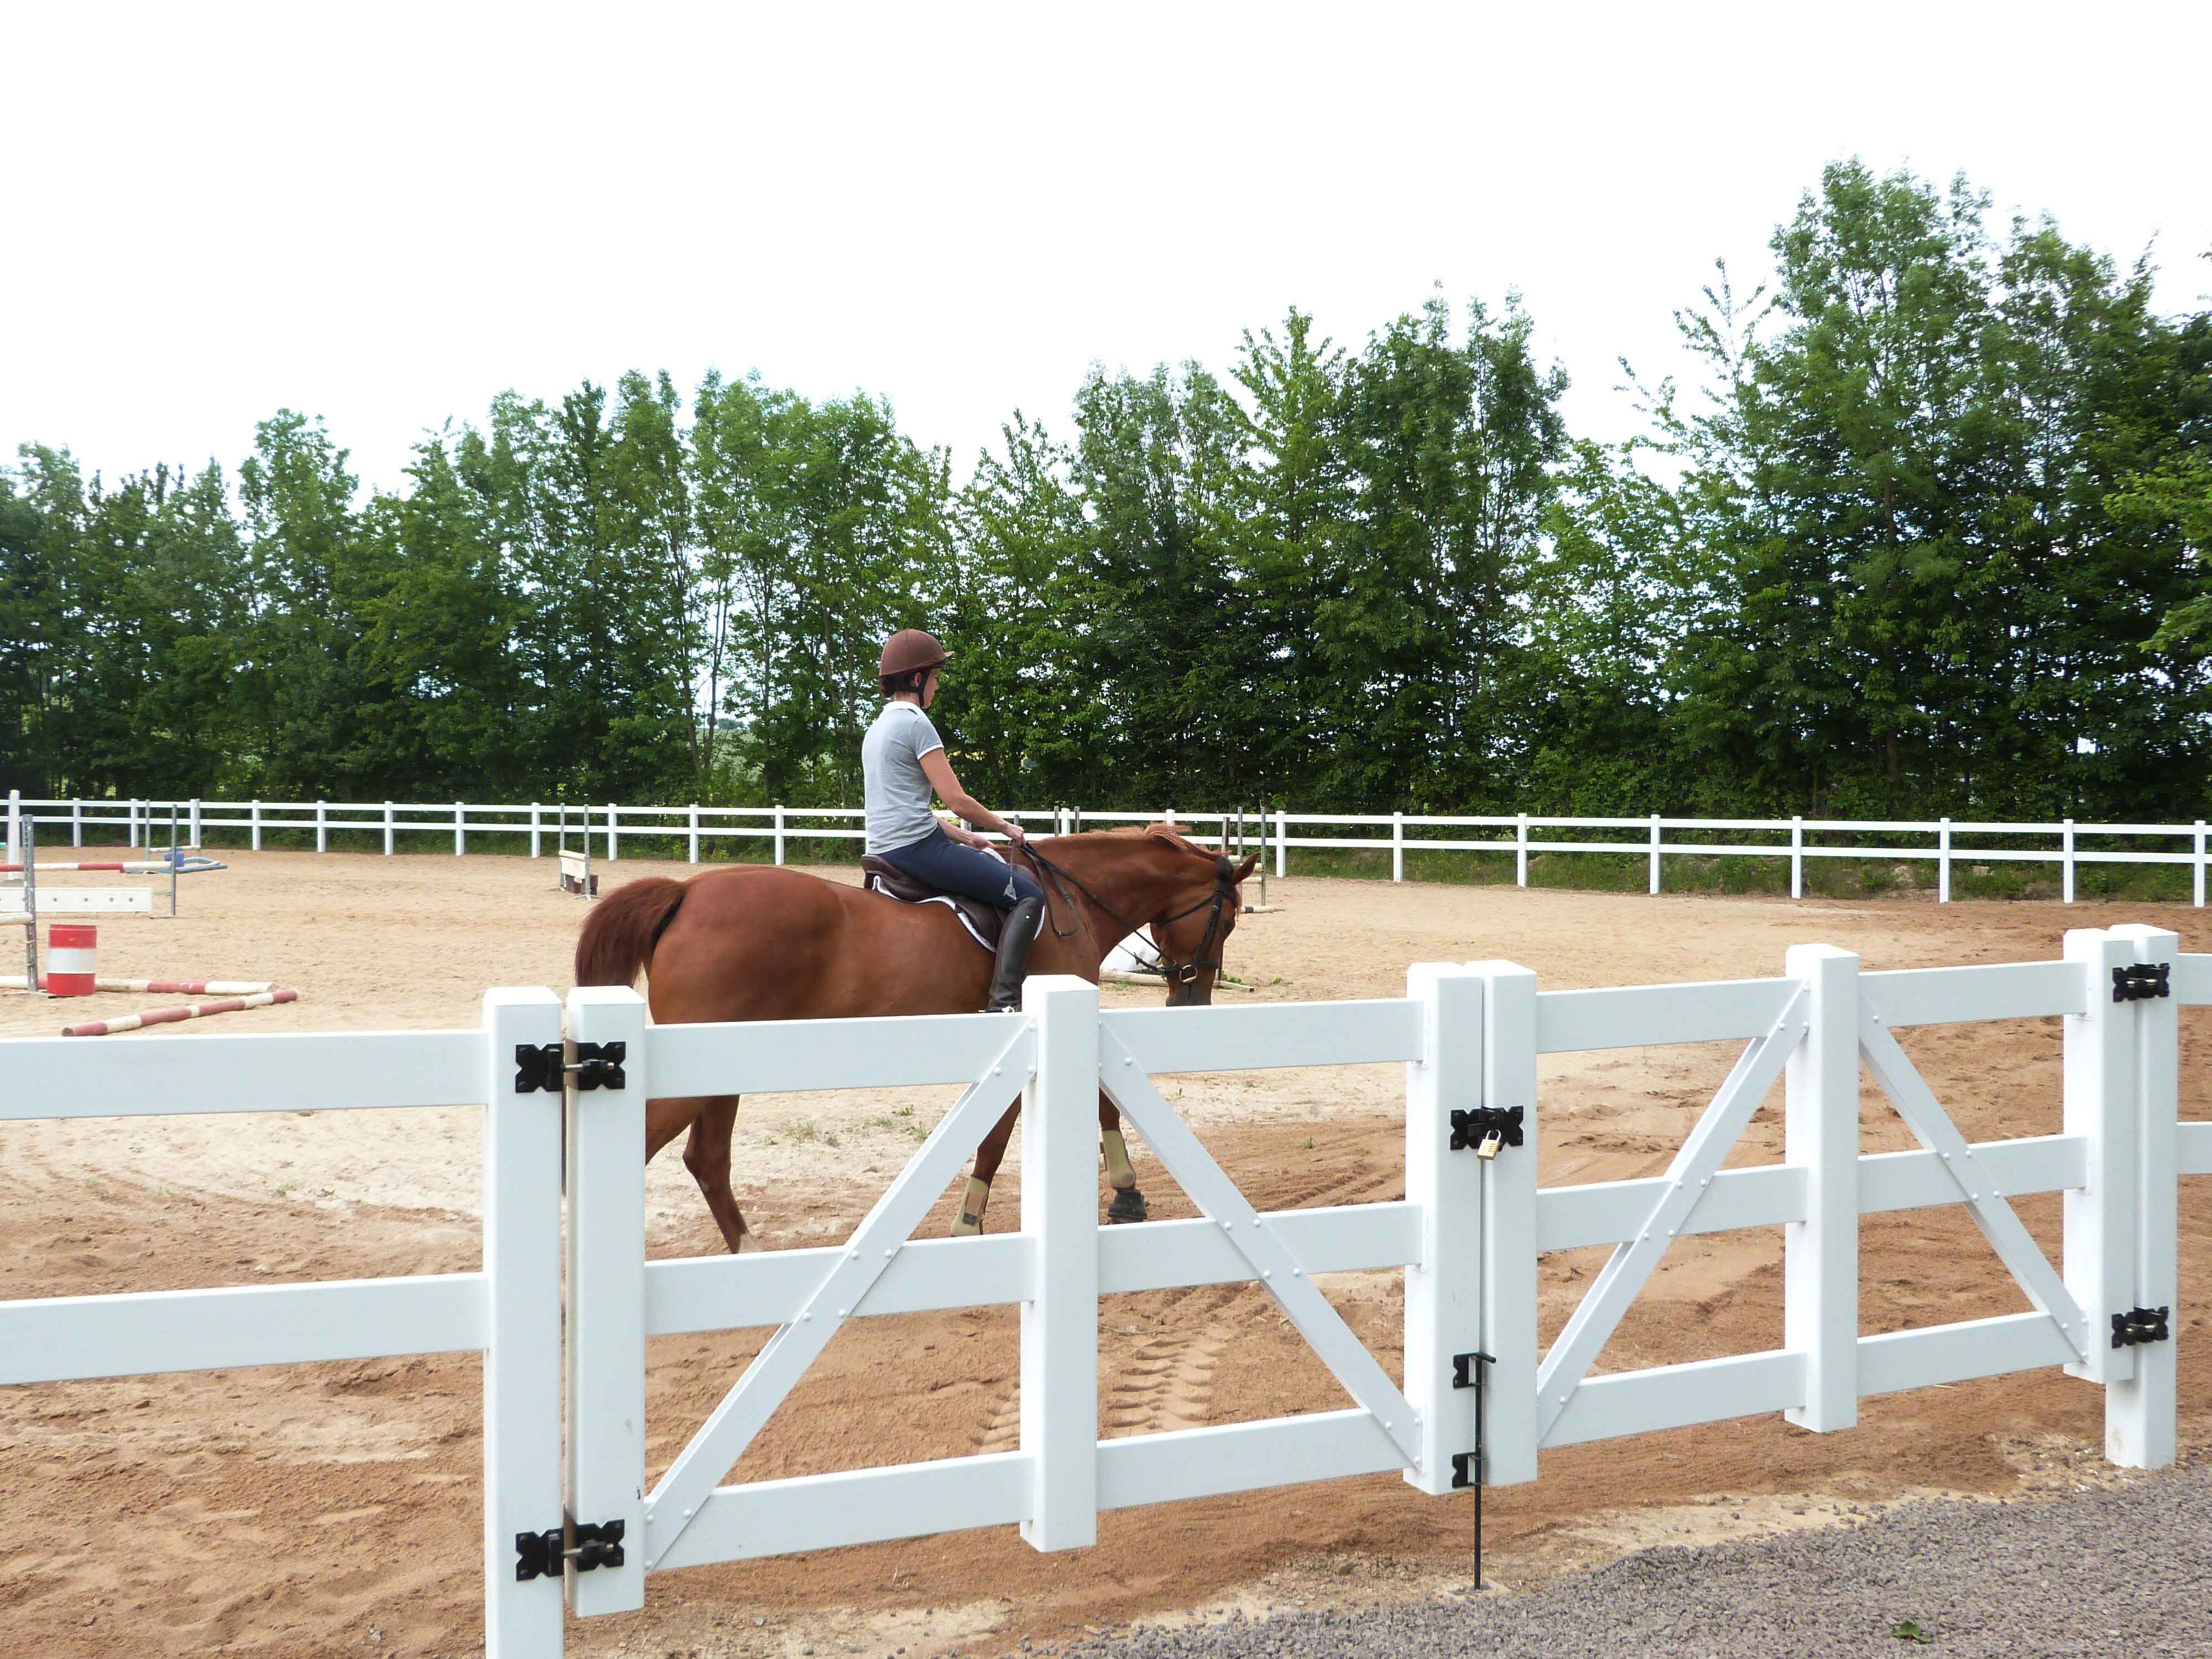 En kvinnlig ryttare leder sin häst runt på en hoppbana. Arenan är avgränsad av ett häststängsel av vit plast.